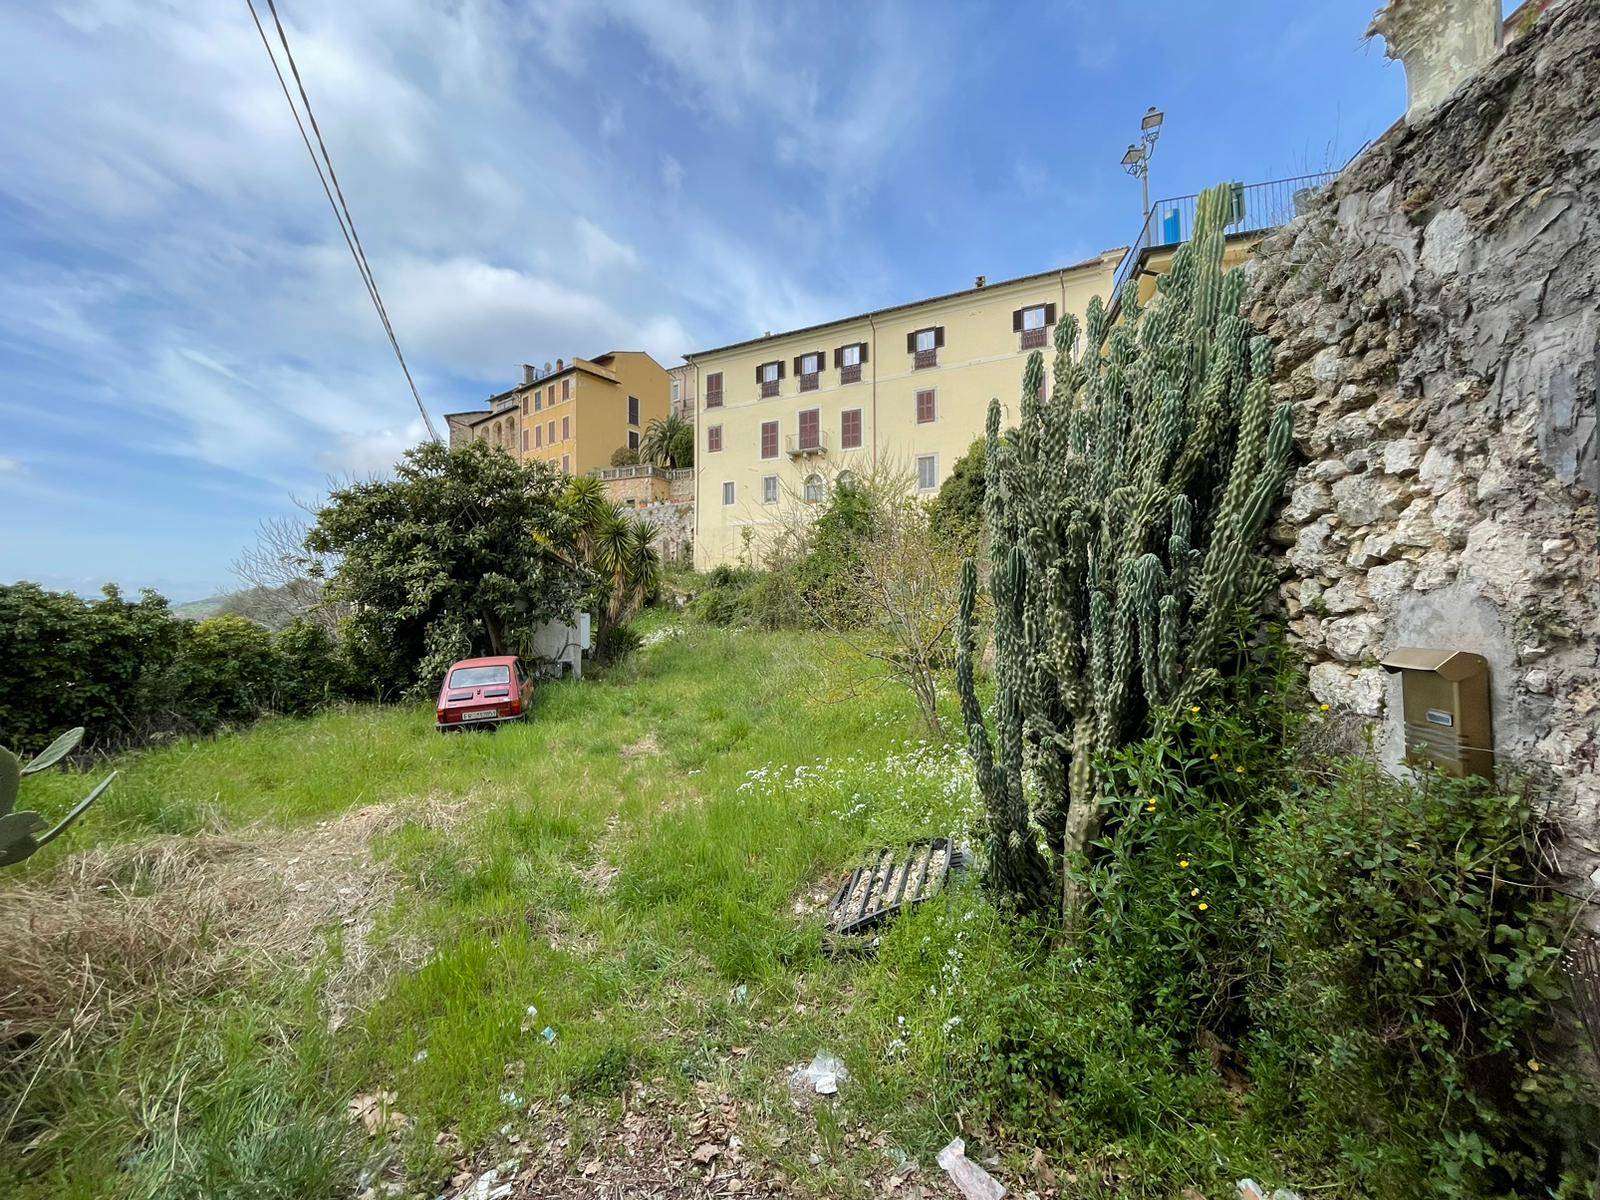 Rustico / Casale in vendita a Arpino, 7 locali, prezzo € 195.000 | CambioCasa.it